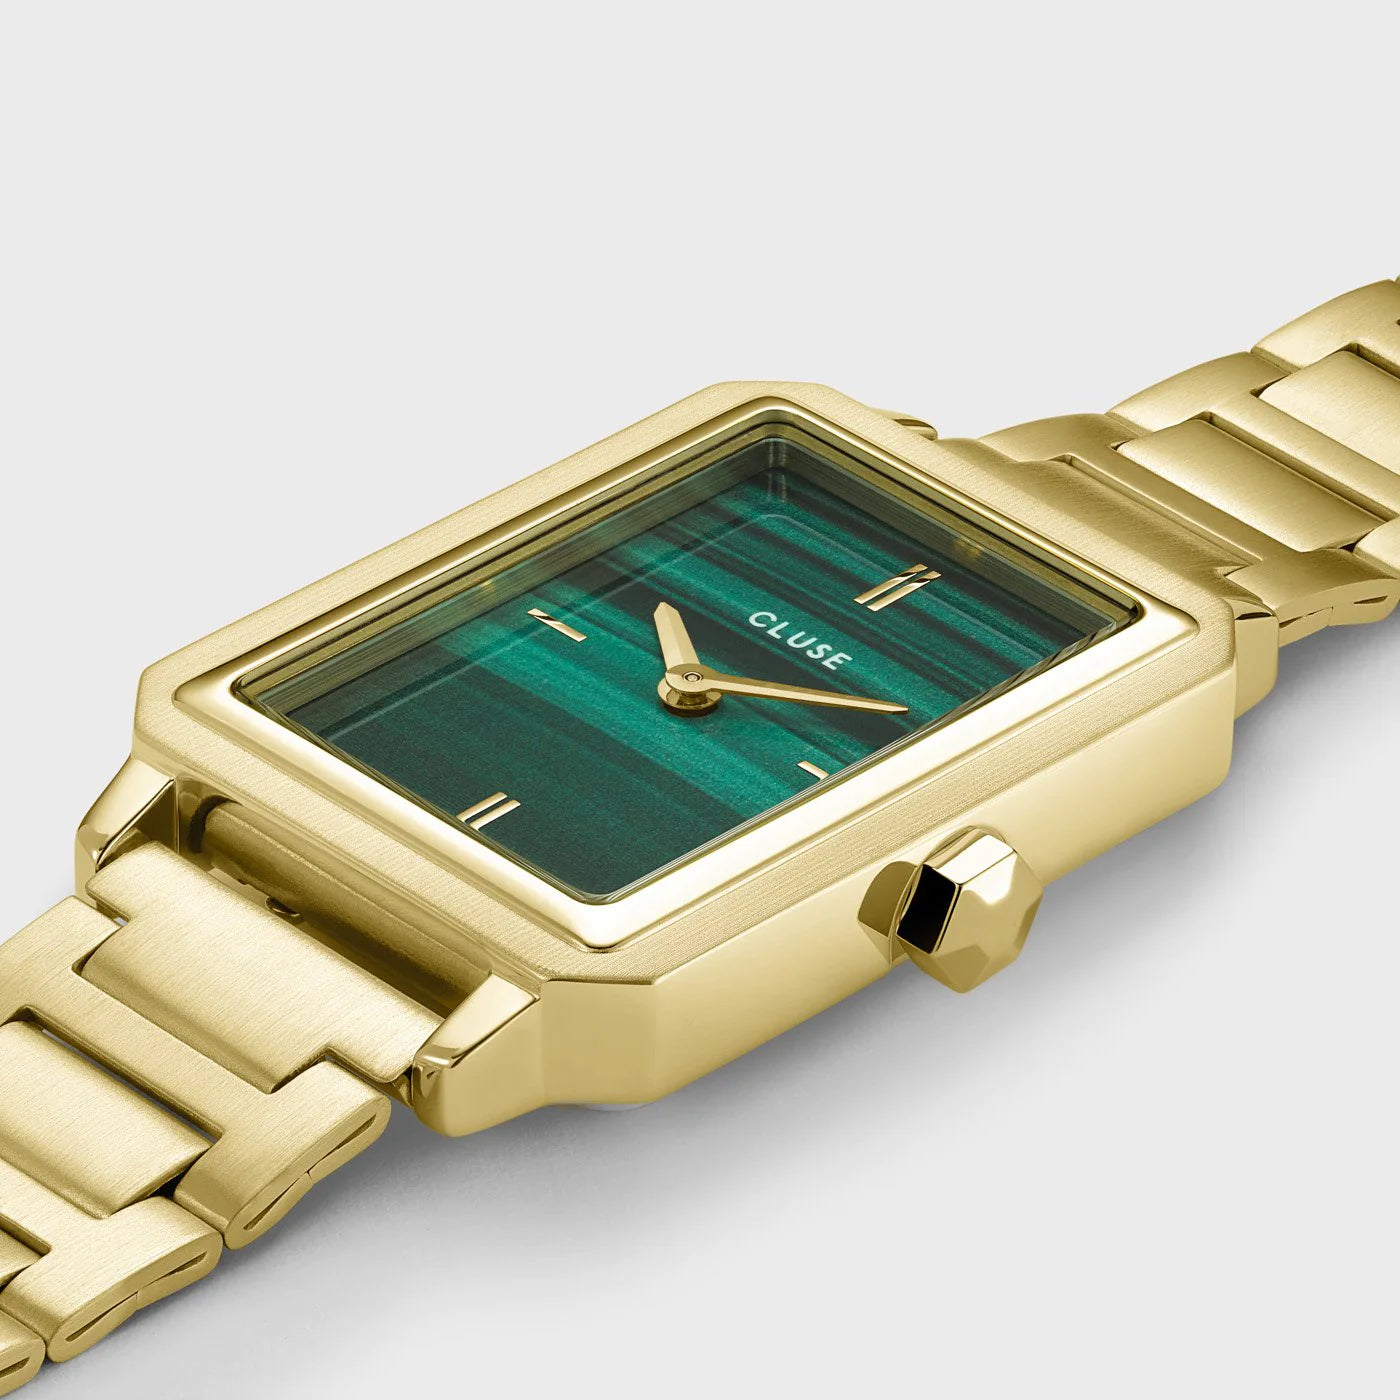 Detailaufnahme der Cluse "Fluette" Stahl-Uhr mit grünem Malachit-Druck-Zifferblatt mit goldfarbenem Gehäuse